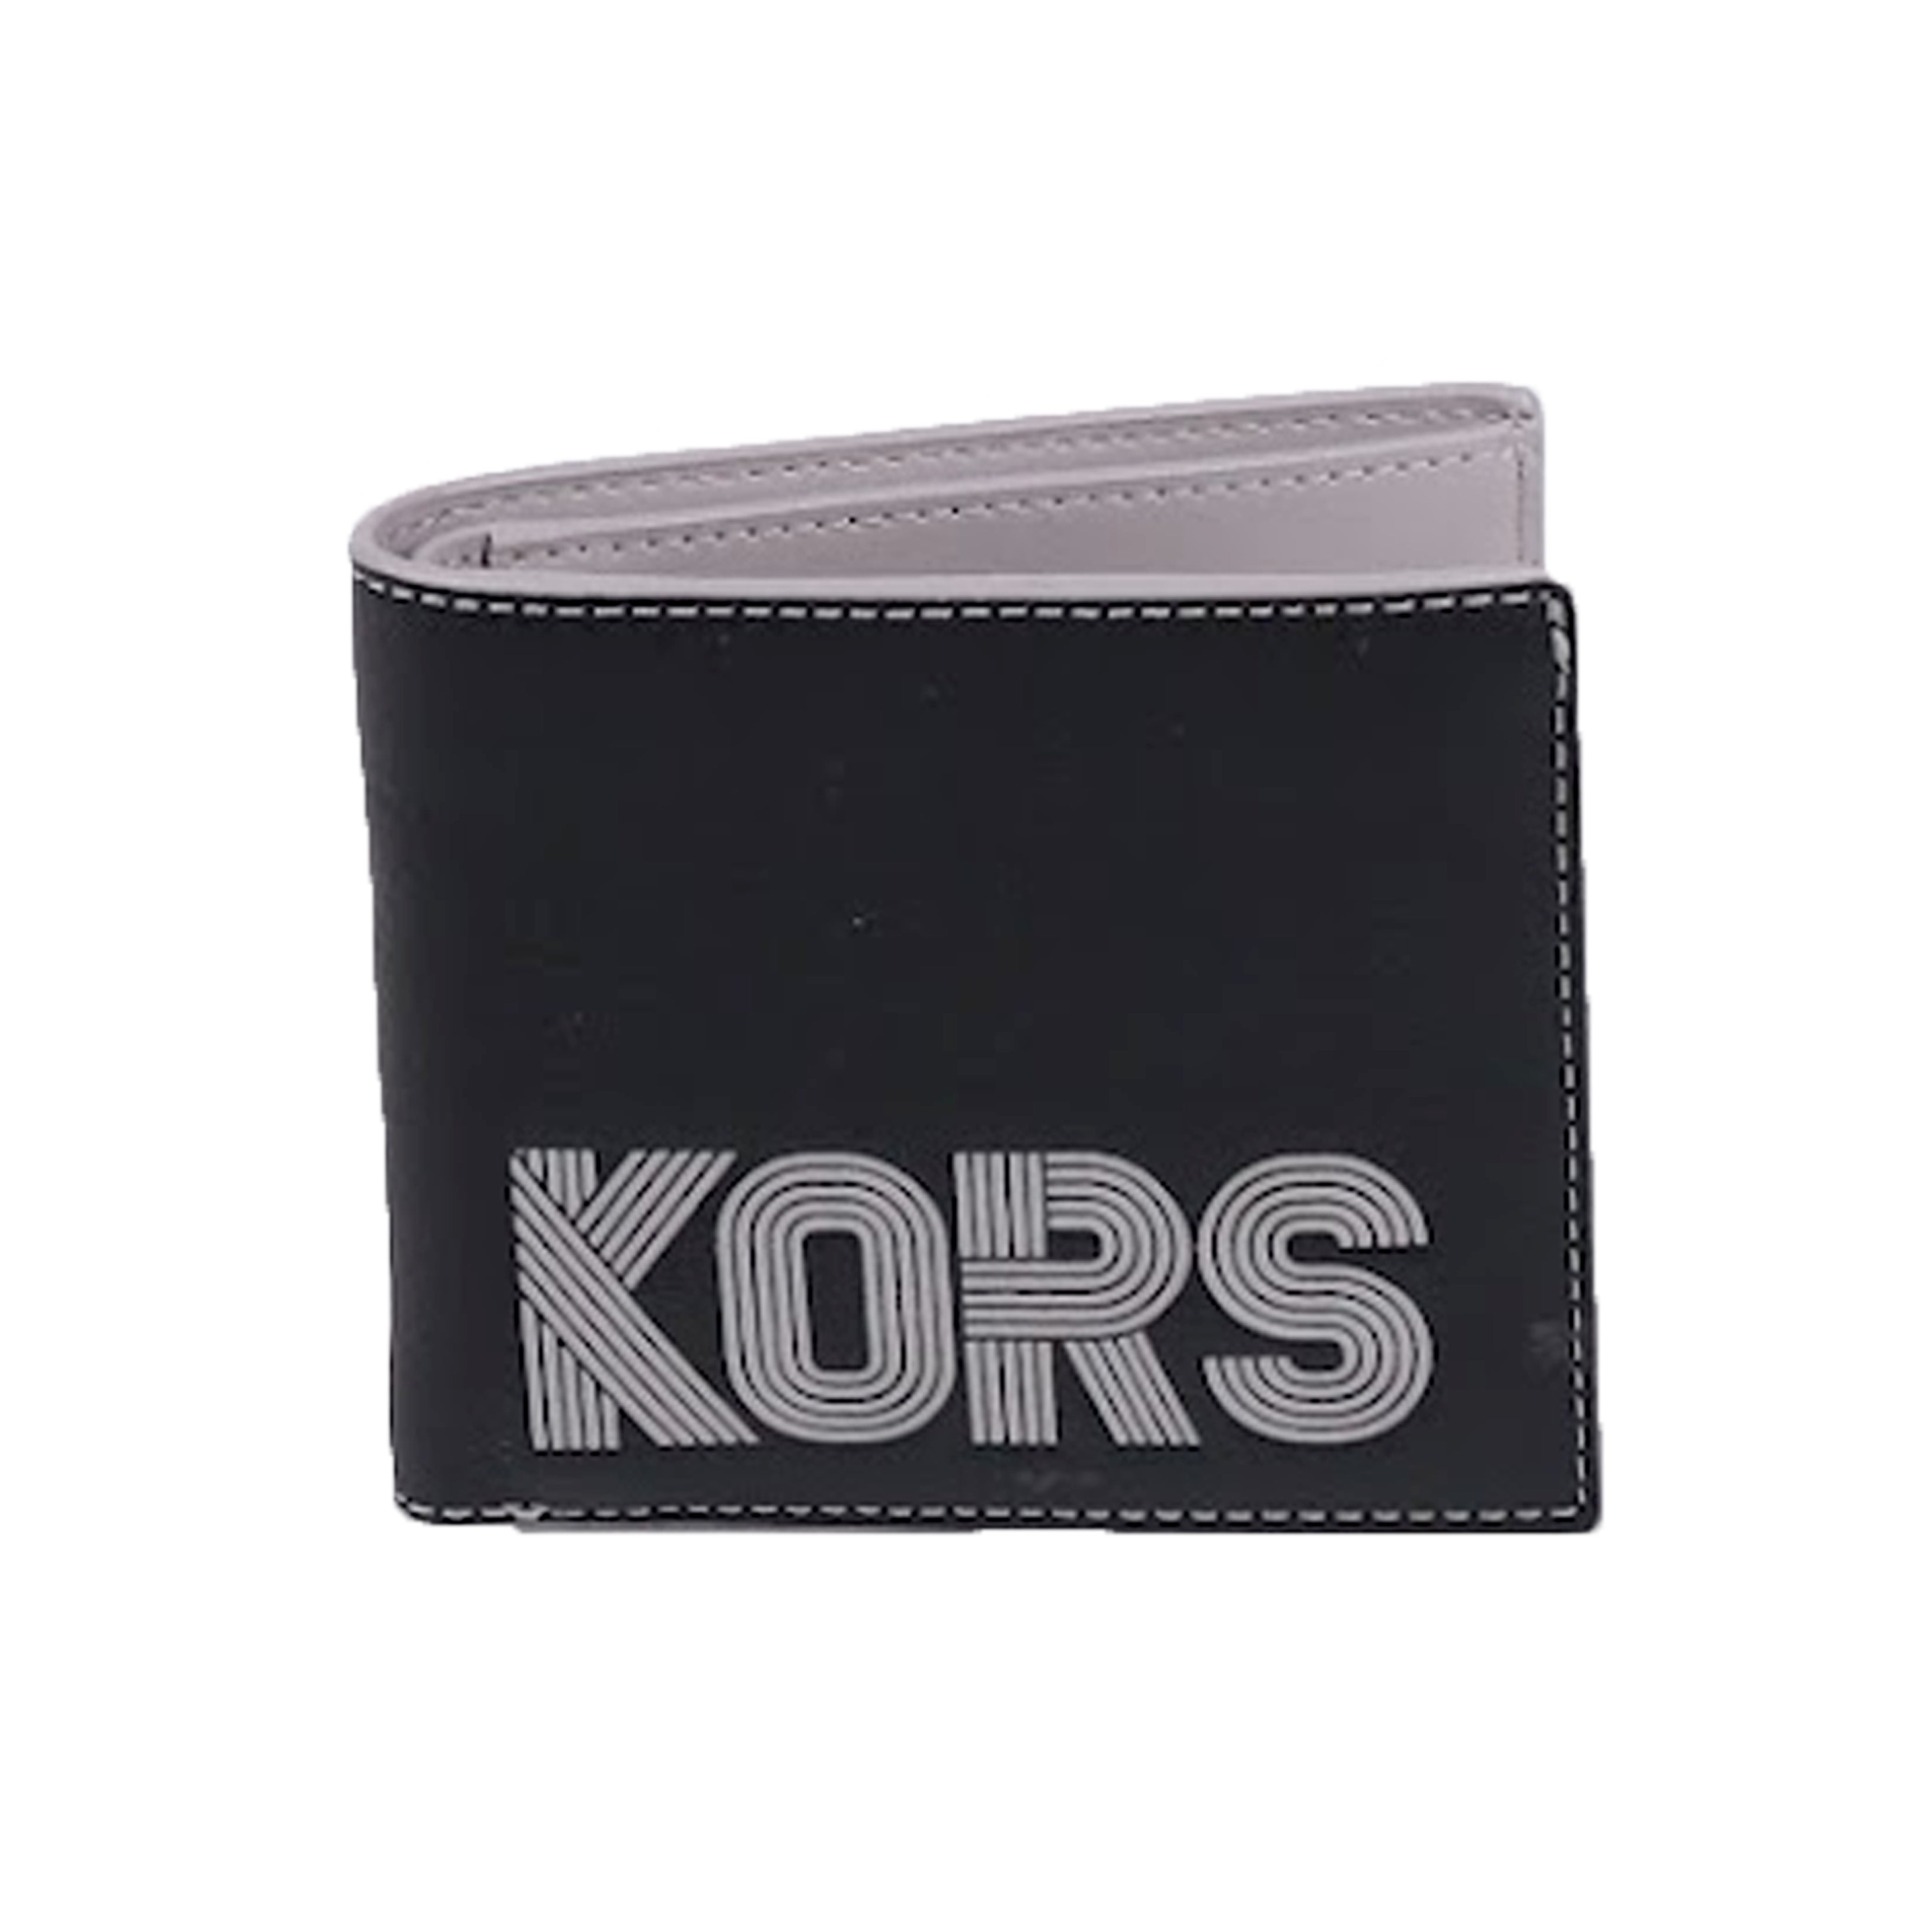  Michael Kors Men's Cooper Billfold with Pocket Wallet